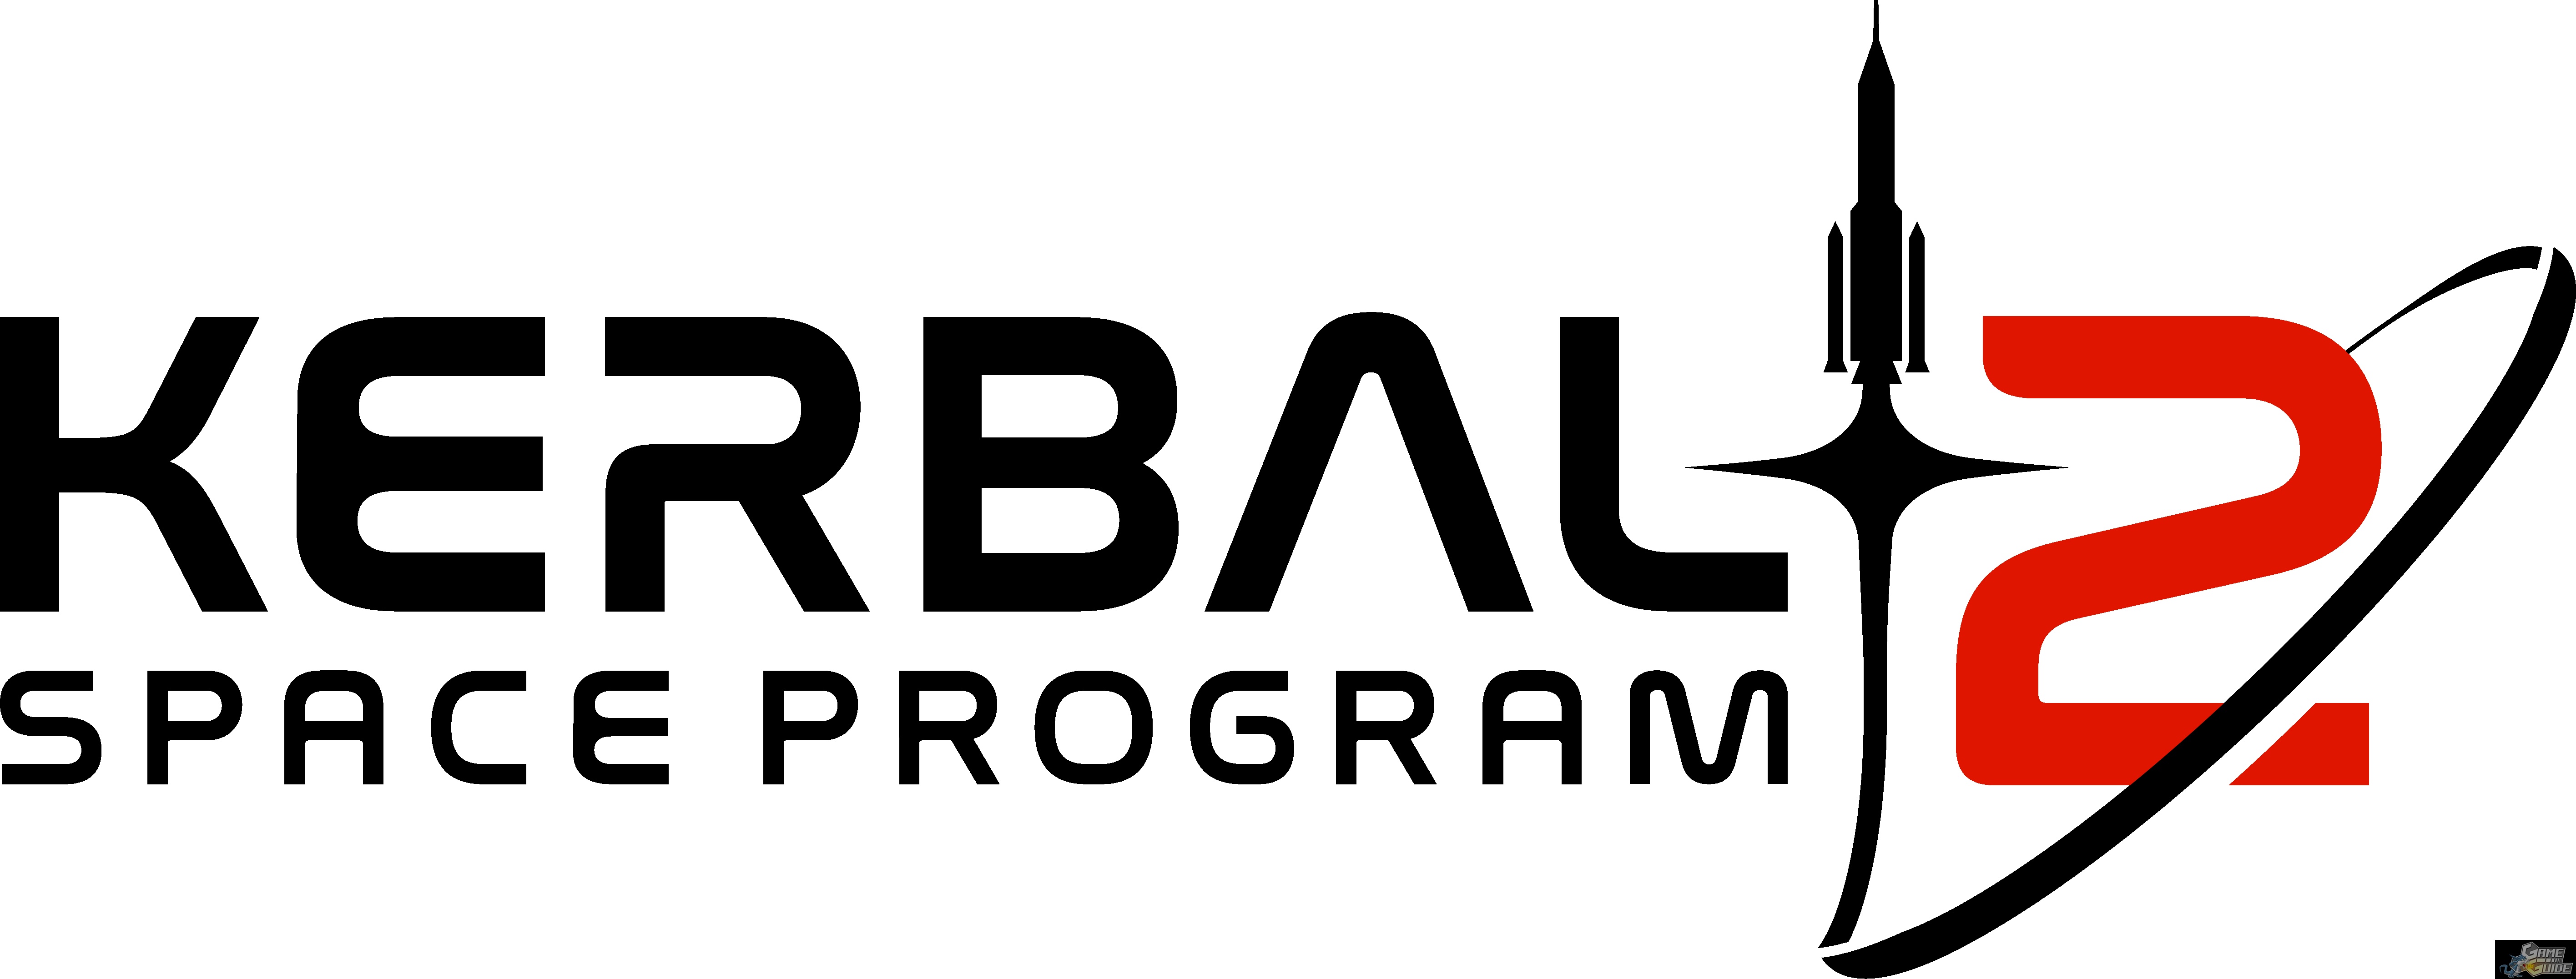 the kerbal space program 2